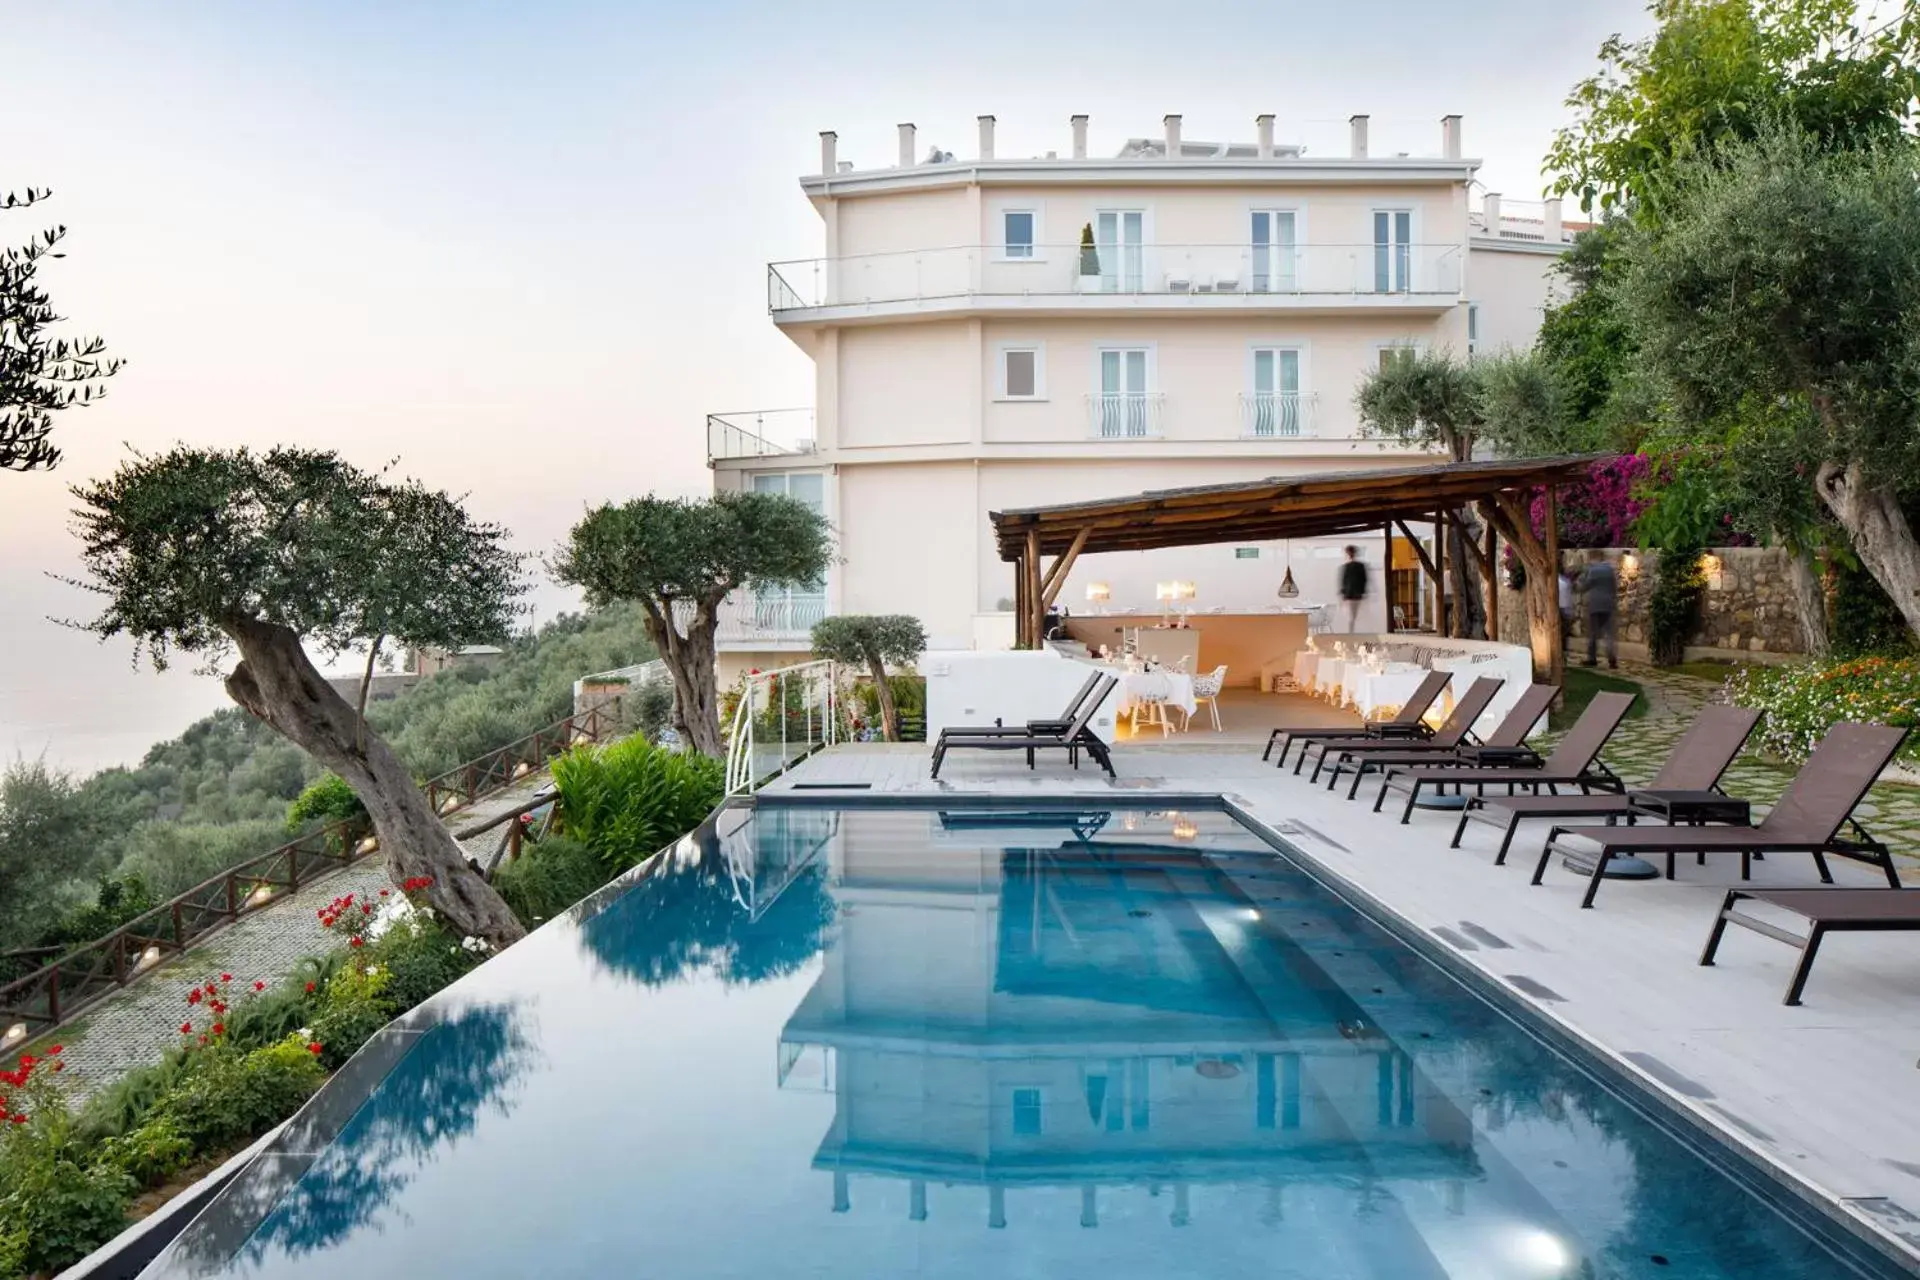 Sunset, Swimming Pool in Villa Fiorella Art Hotel